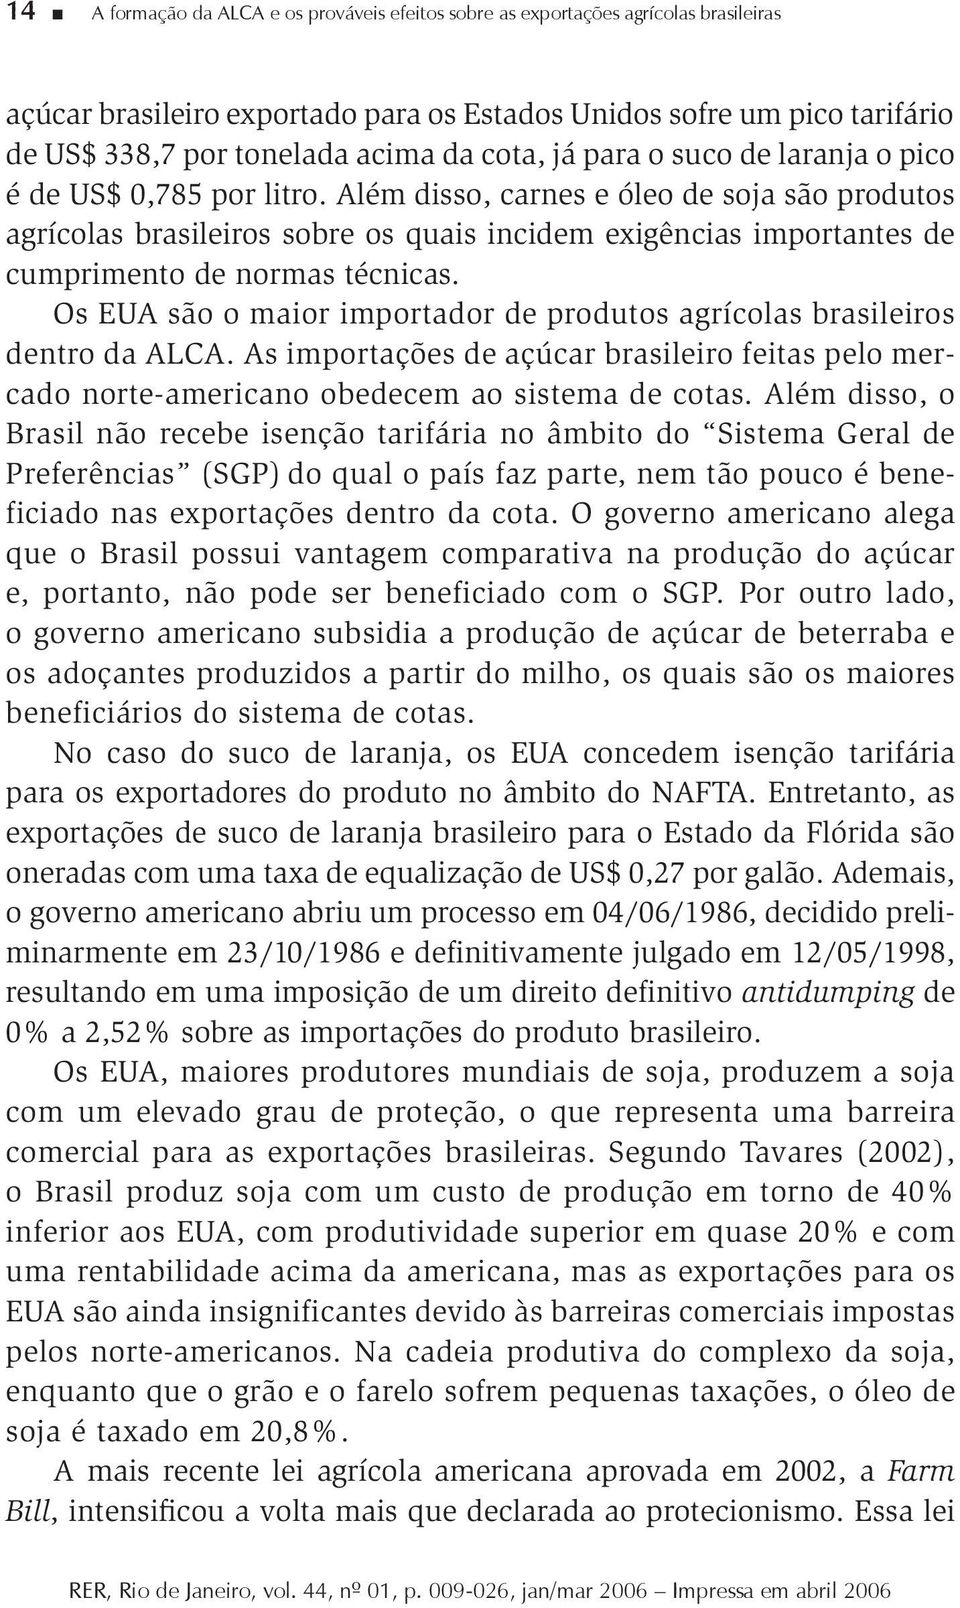 Além disso, carnes e óleo de soja são produtos agrícolas brasileiros sobre os quais incidem exigências importantes de cumprimento de normas técnicas.